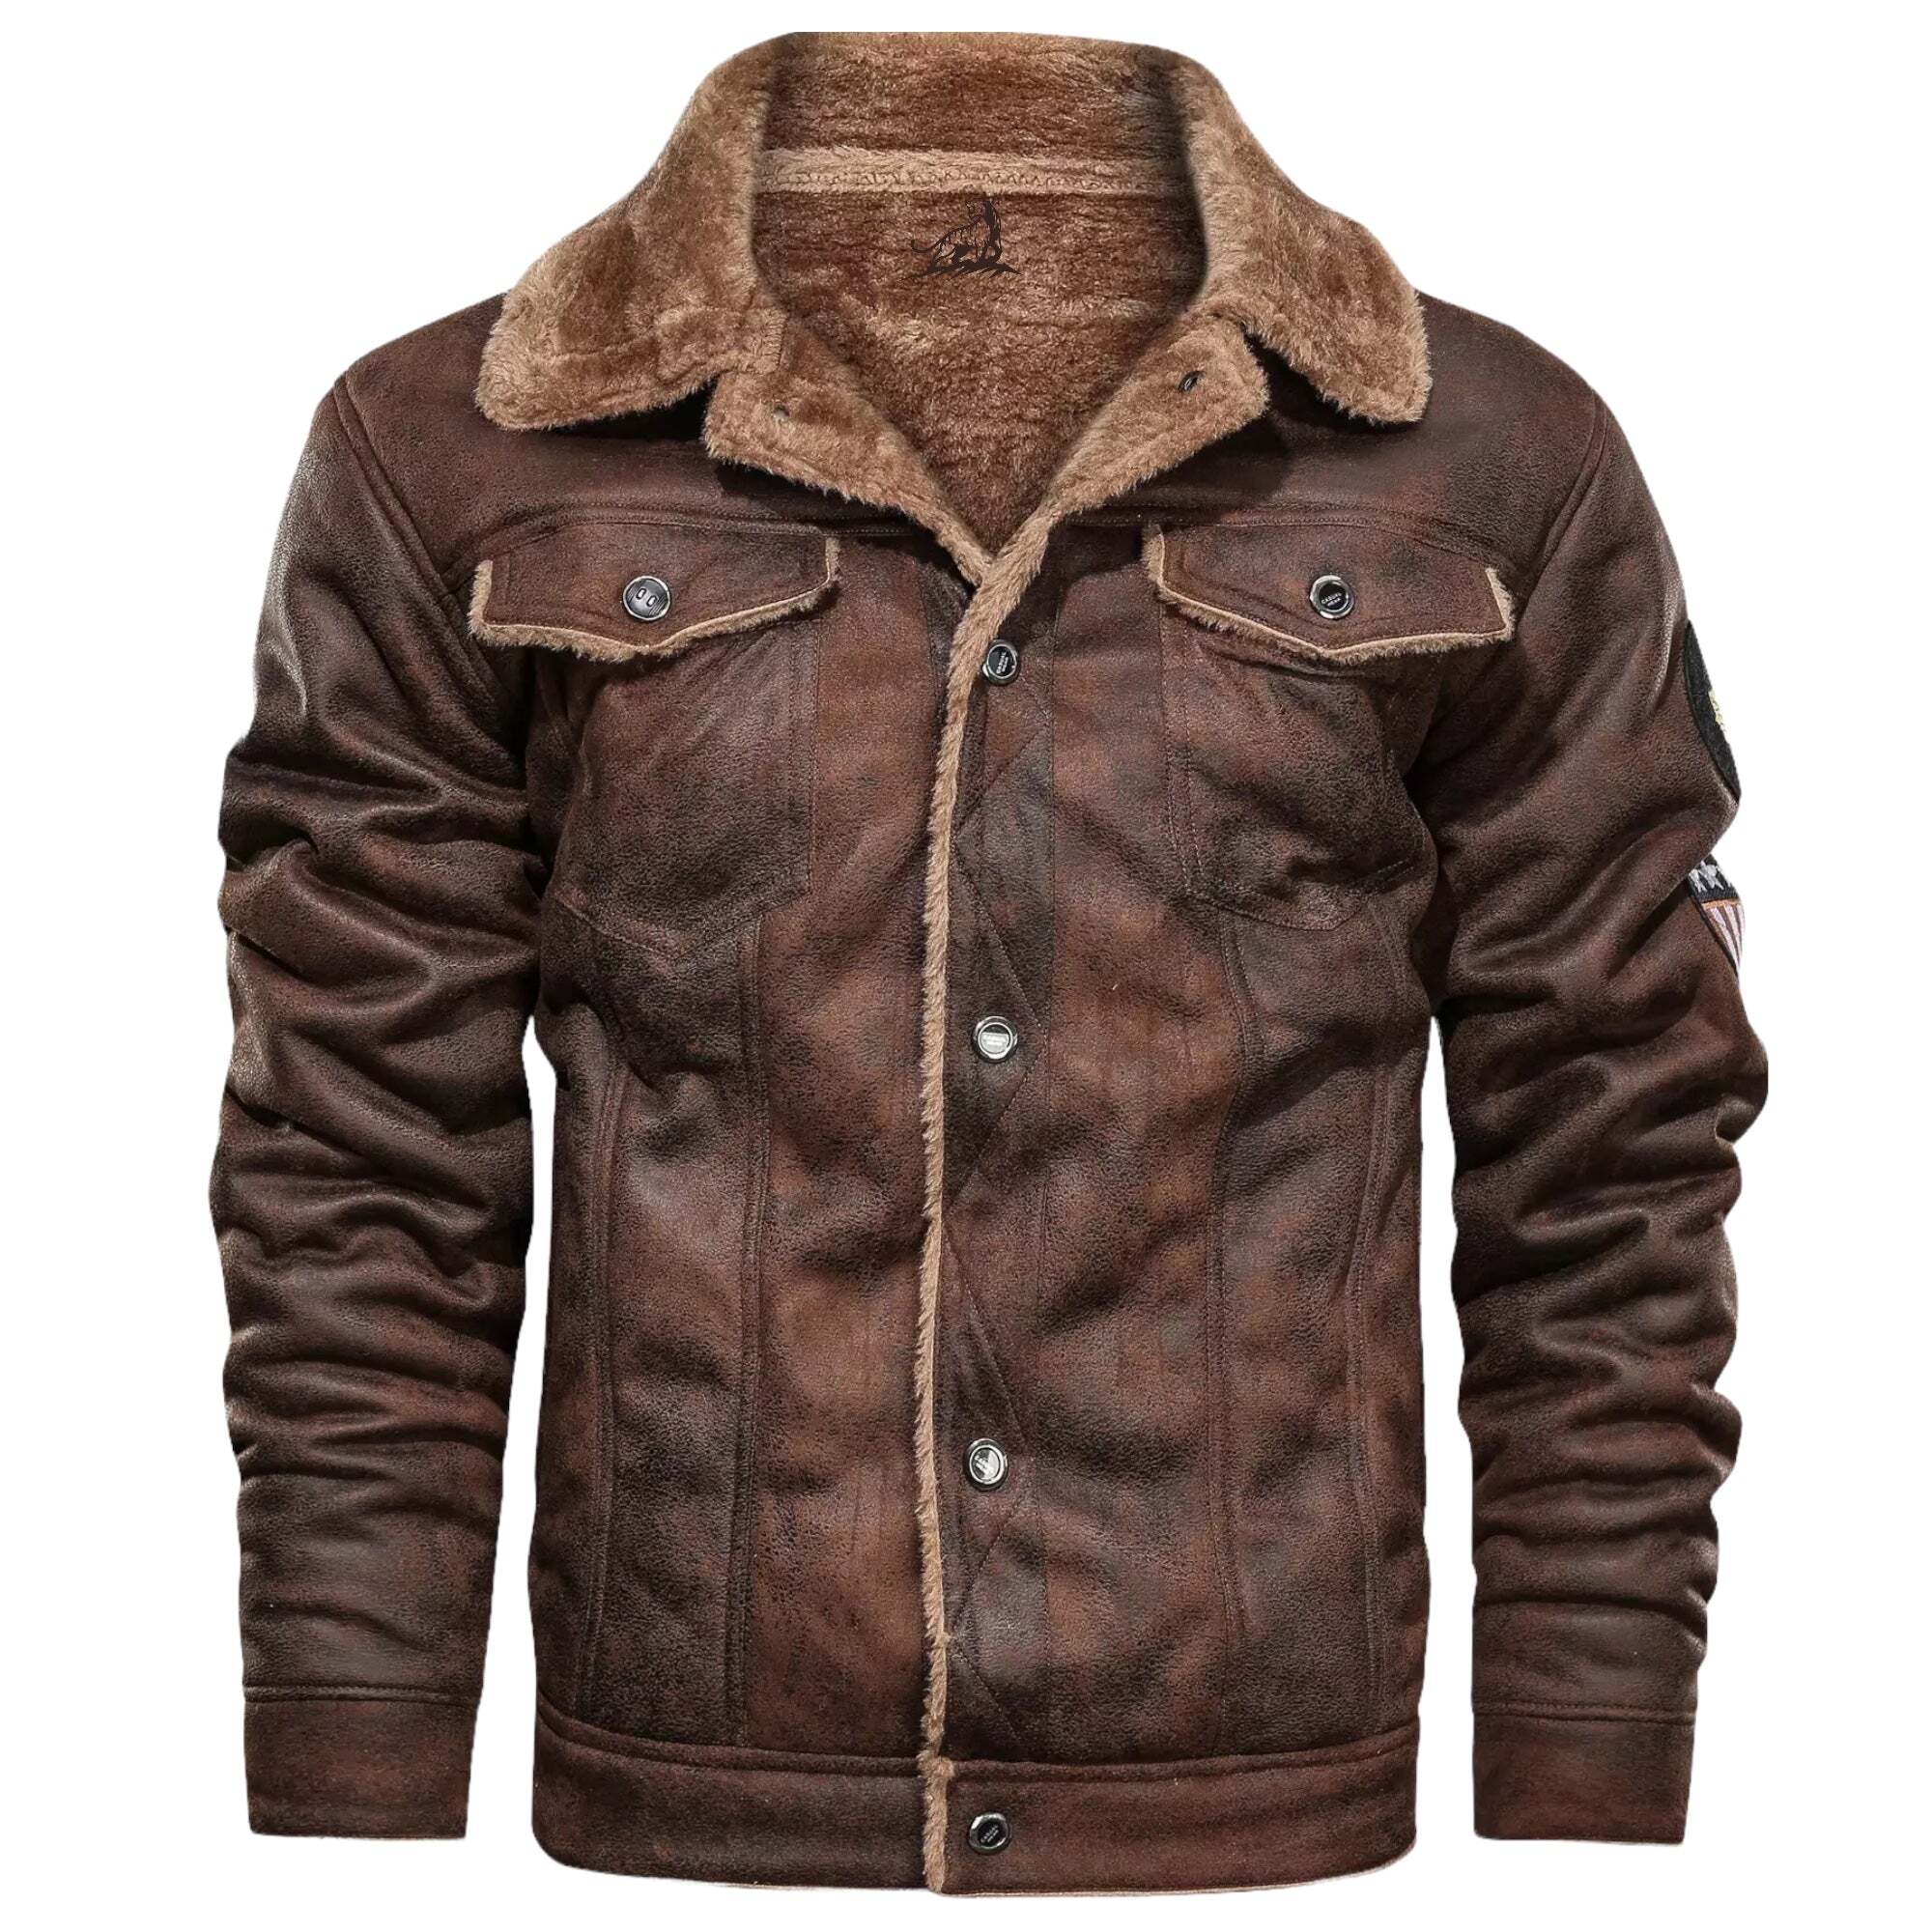 'Kronos' Leather Jacket